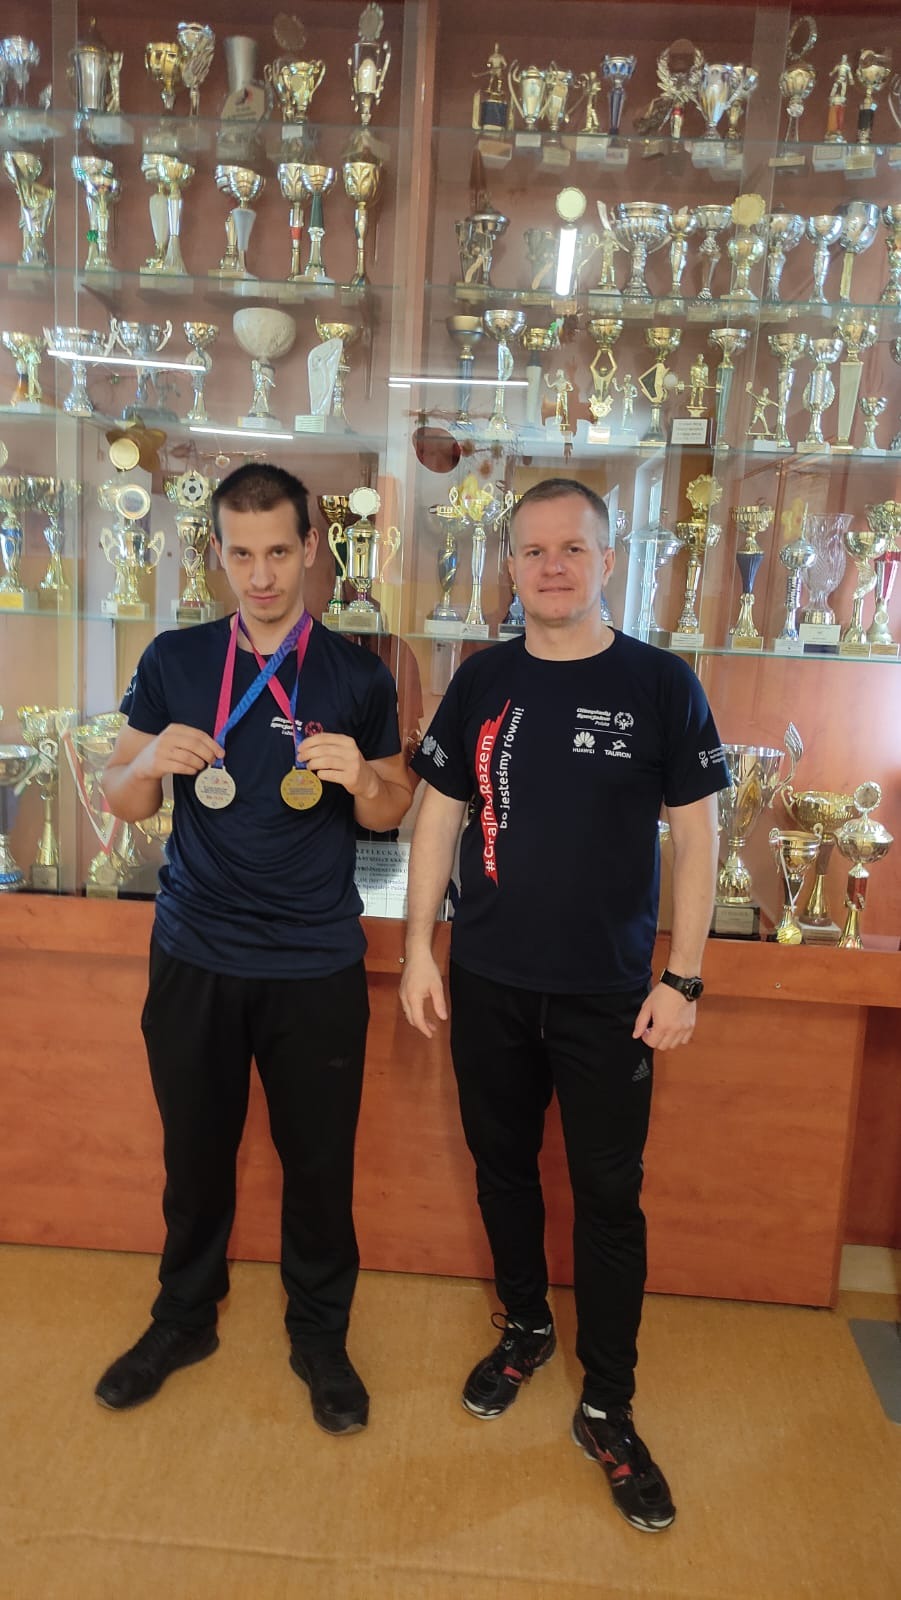 Na zdjęciu trener Pan Dariusz i uczeń Tomasz Kosiorek z medalami na szyi